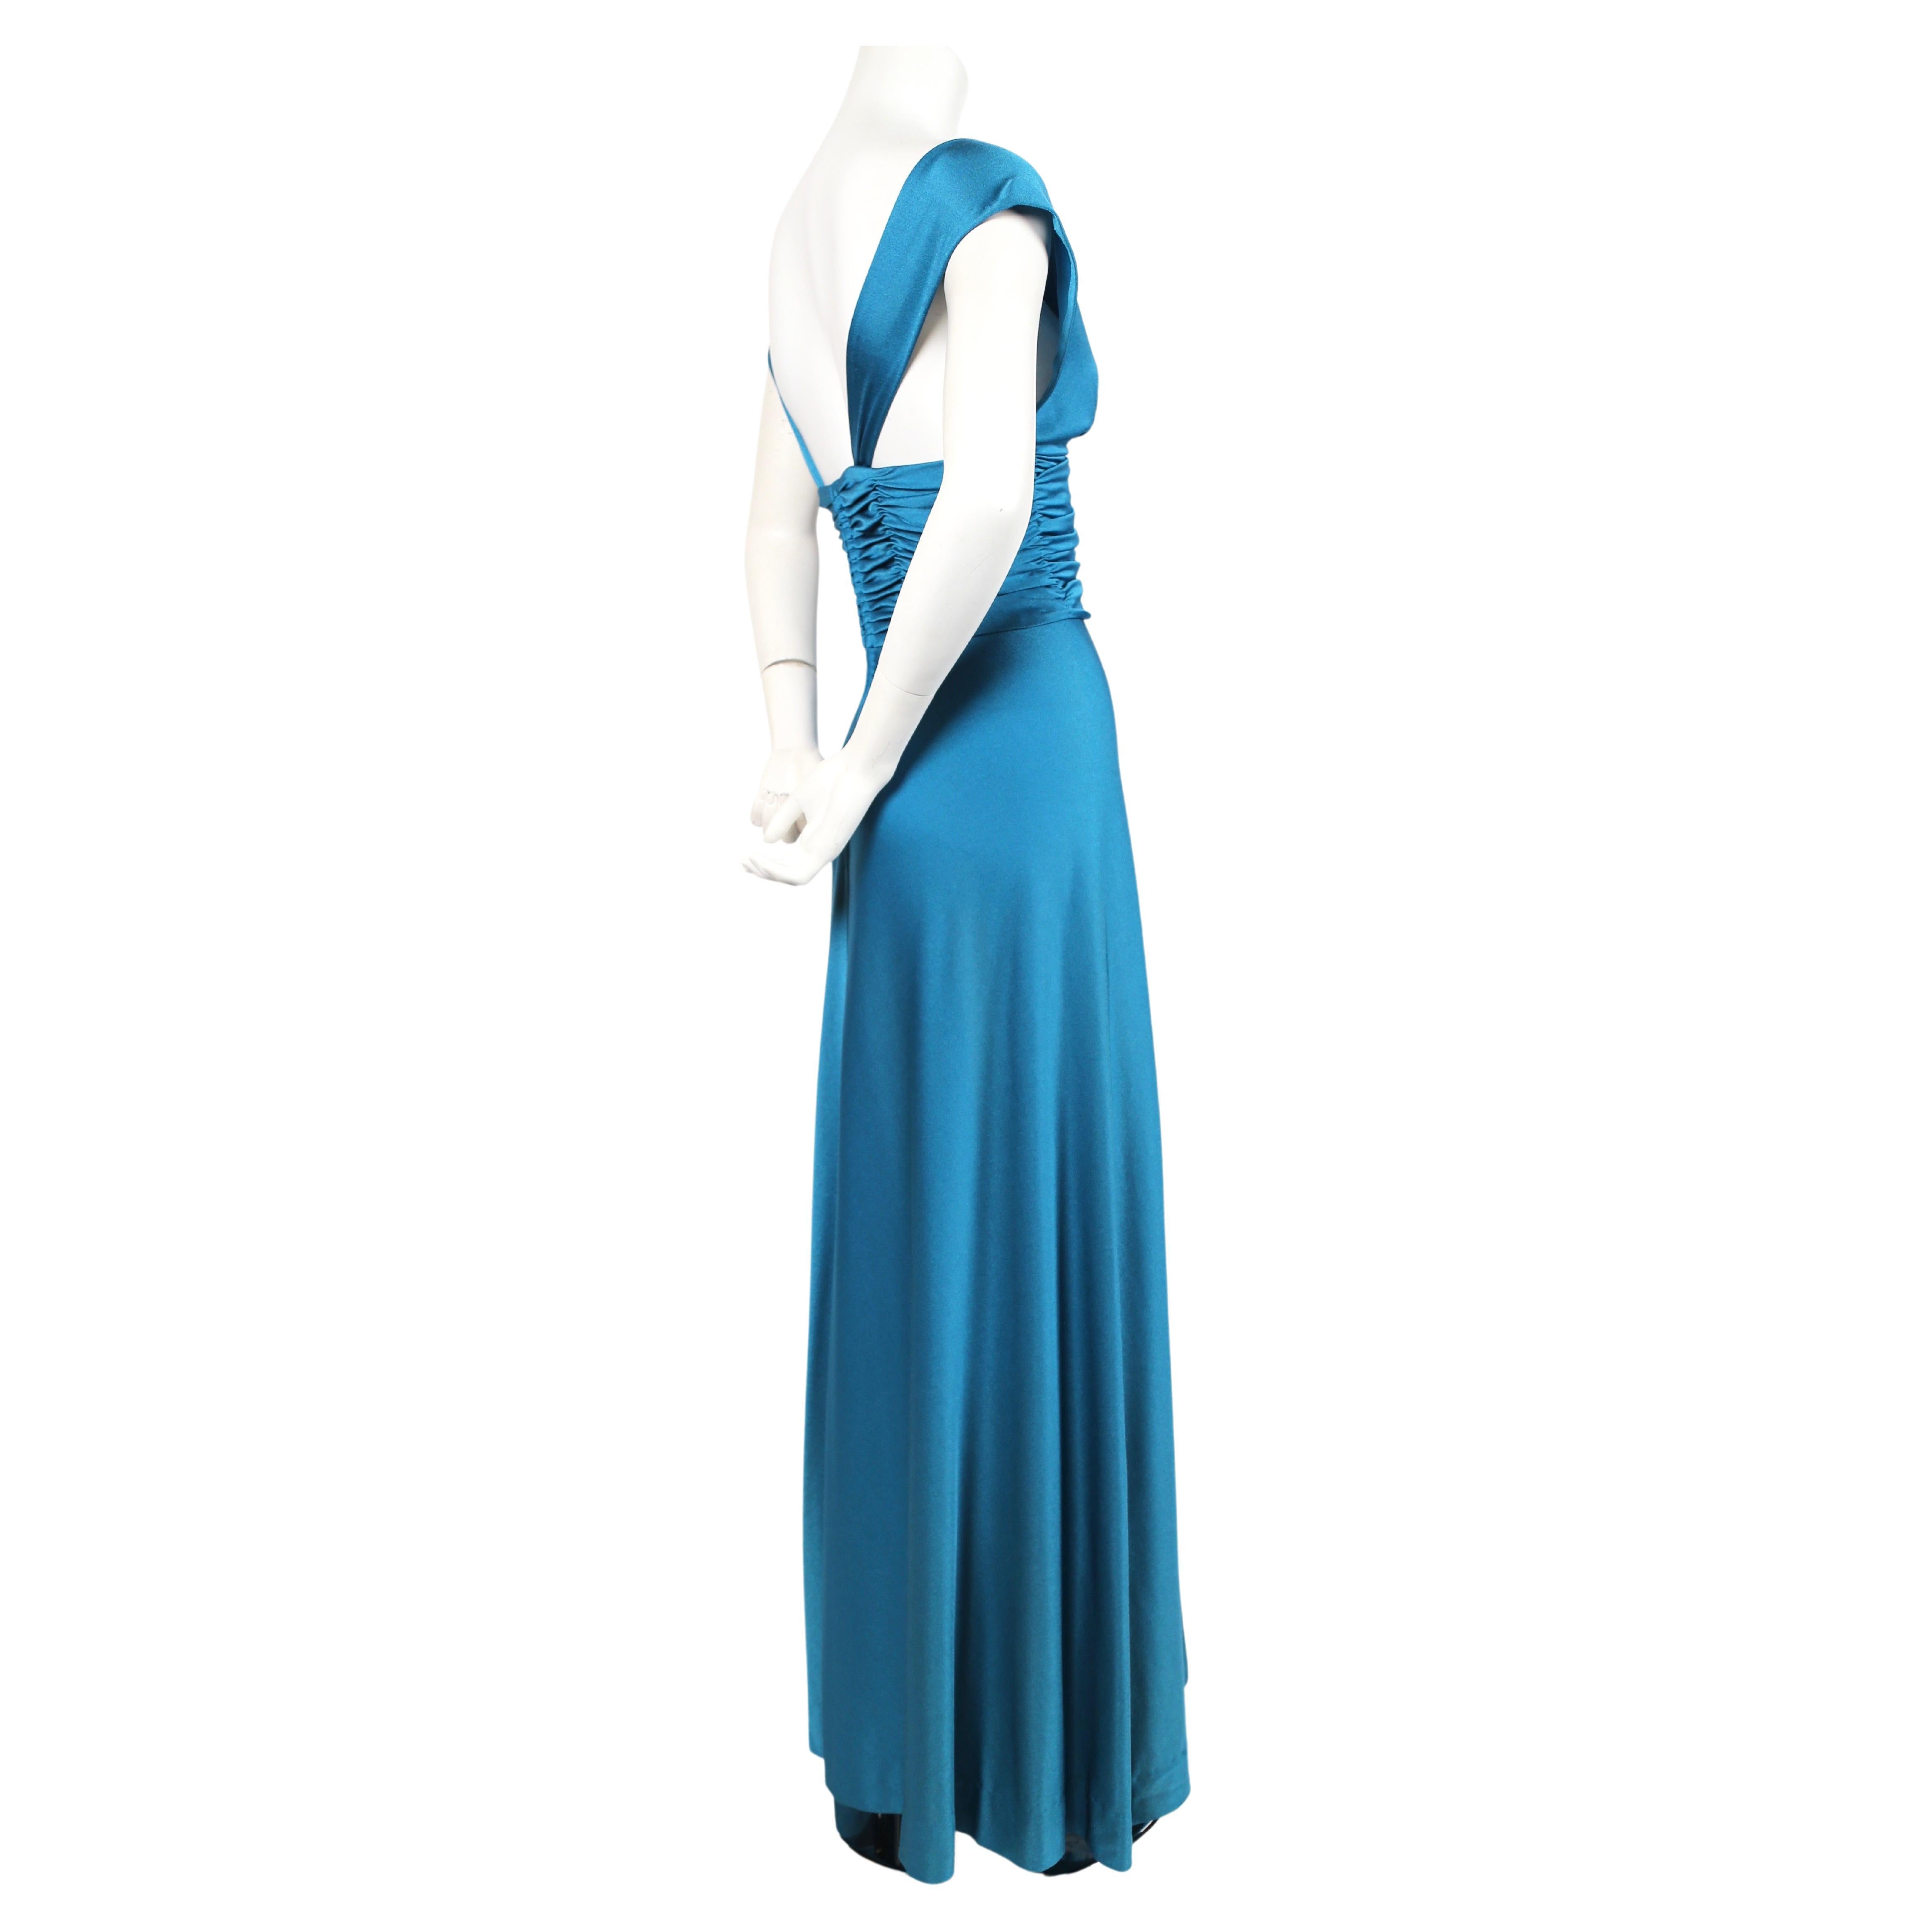 Superbe robe en jersey bleu turquoise vif avec ruchés de Loris Azzaro datant des années 1970. La robe convient parfaitement aux tailles 2 à 4. Convient le mieux à un buste de 32-33